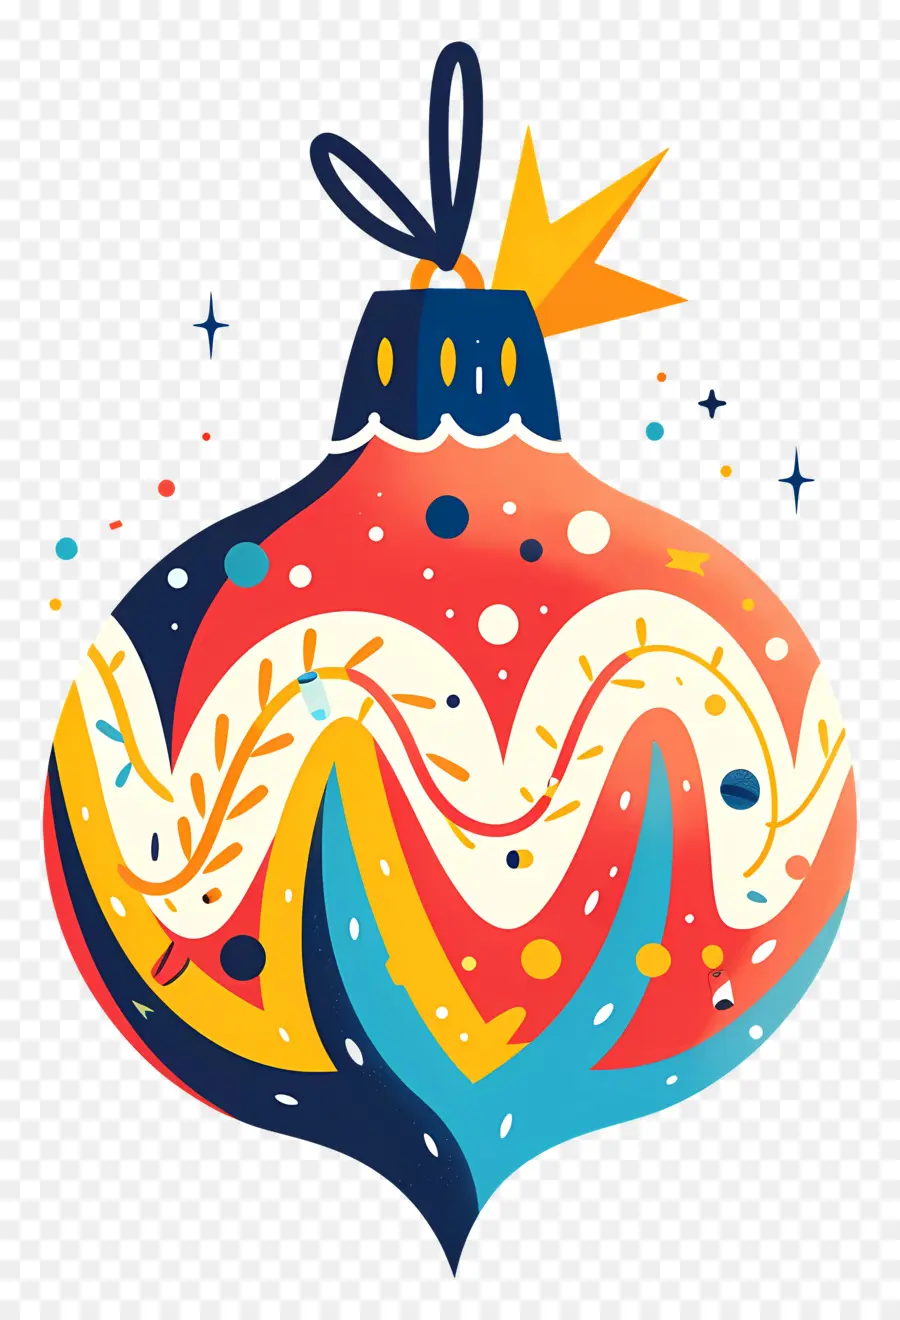 Trang trí giáng sinh - Trang trí Giáng sinh đầy màu sắc với thiết kế trừu tượng và ánh sáng